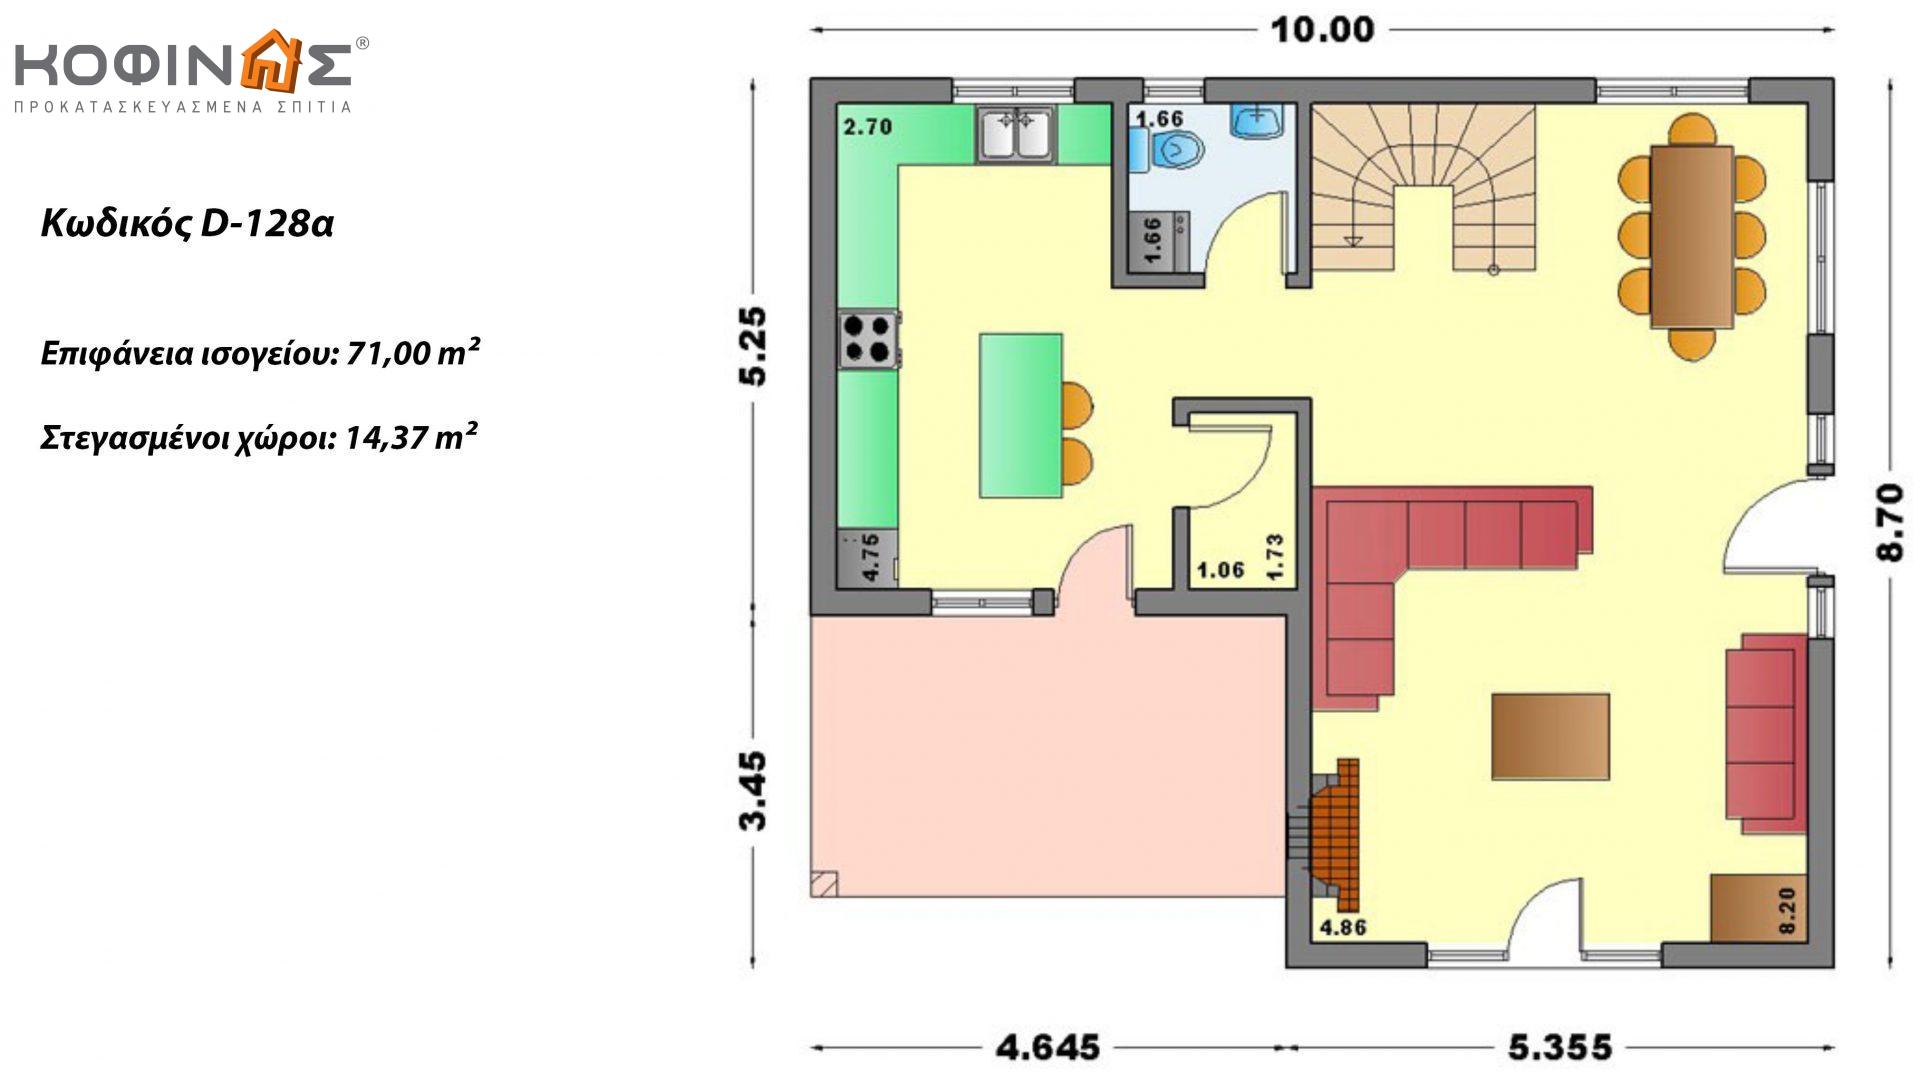 Διώροφη Κατοικία D-128a, συνολικής επιφάνειας 128,60 τ.μ., συνολική επιφάνεια στεγασμένων χώρων 14.37 τ.μ., μπαλκόνια 25.75 τ.μ.